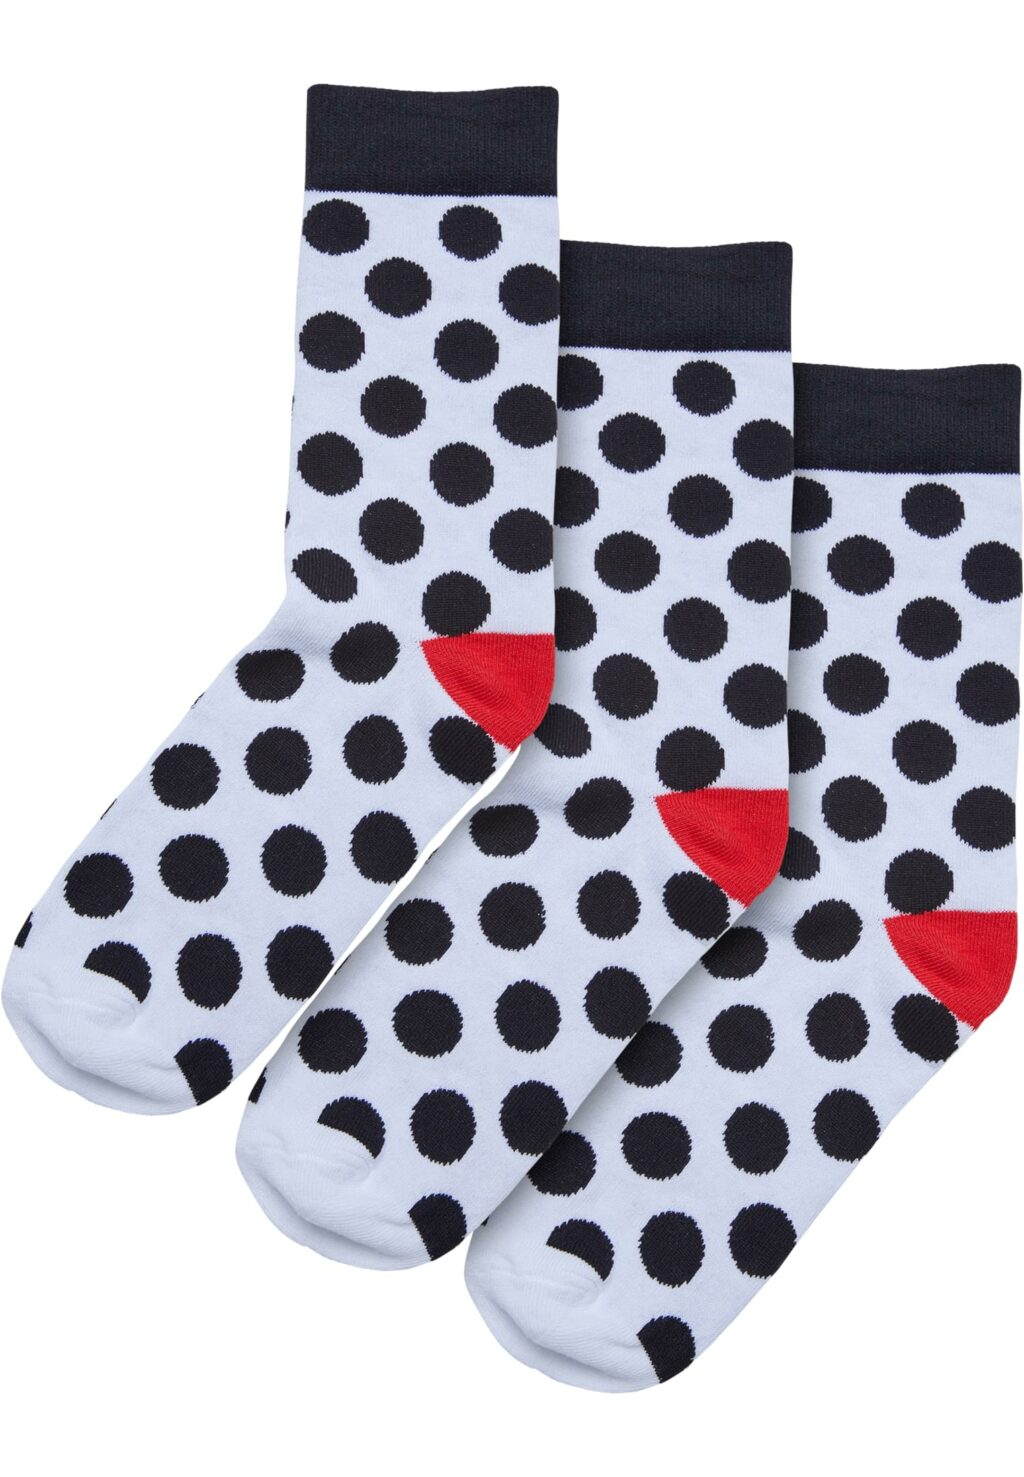 Basic Polka Dot Socks 3-Pack white/black TB6805